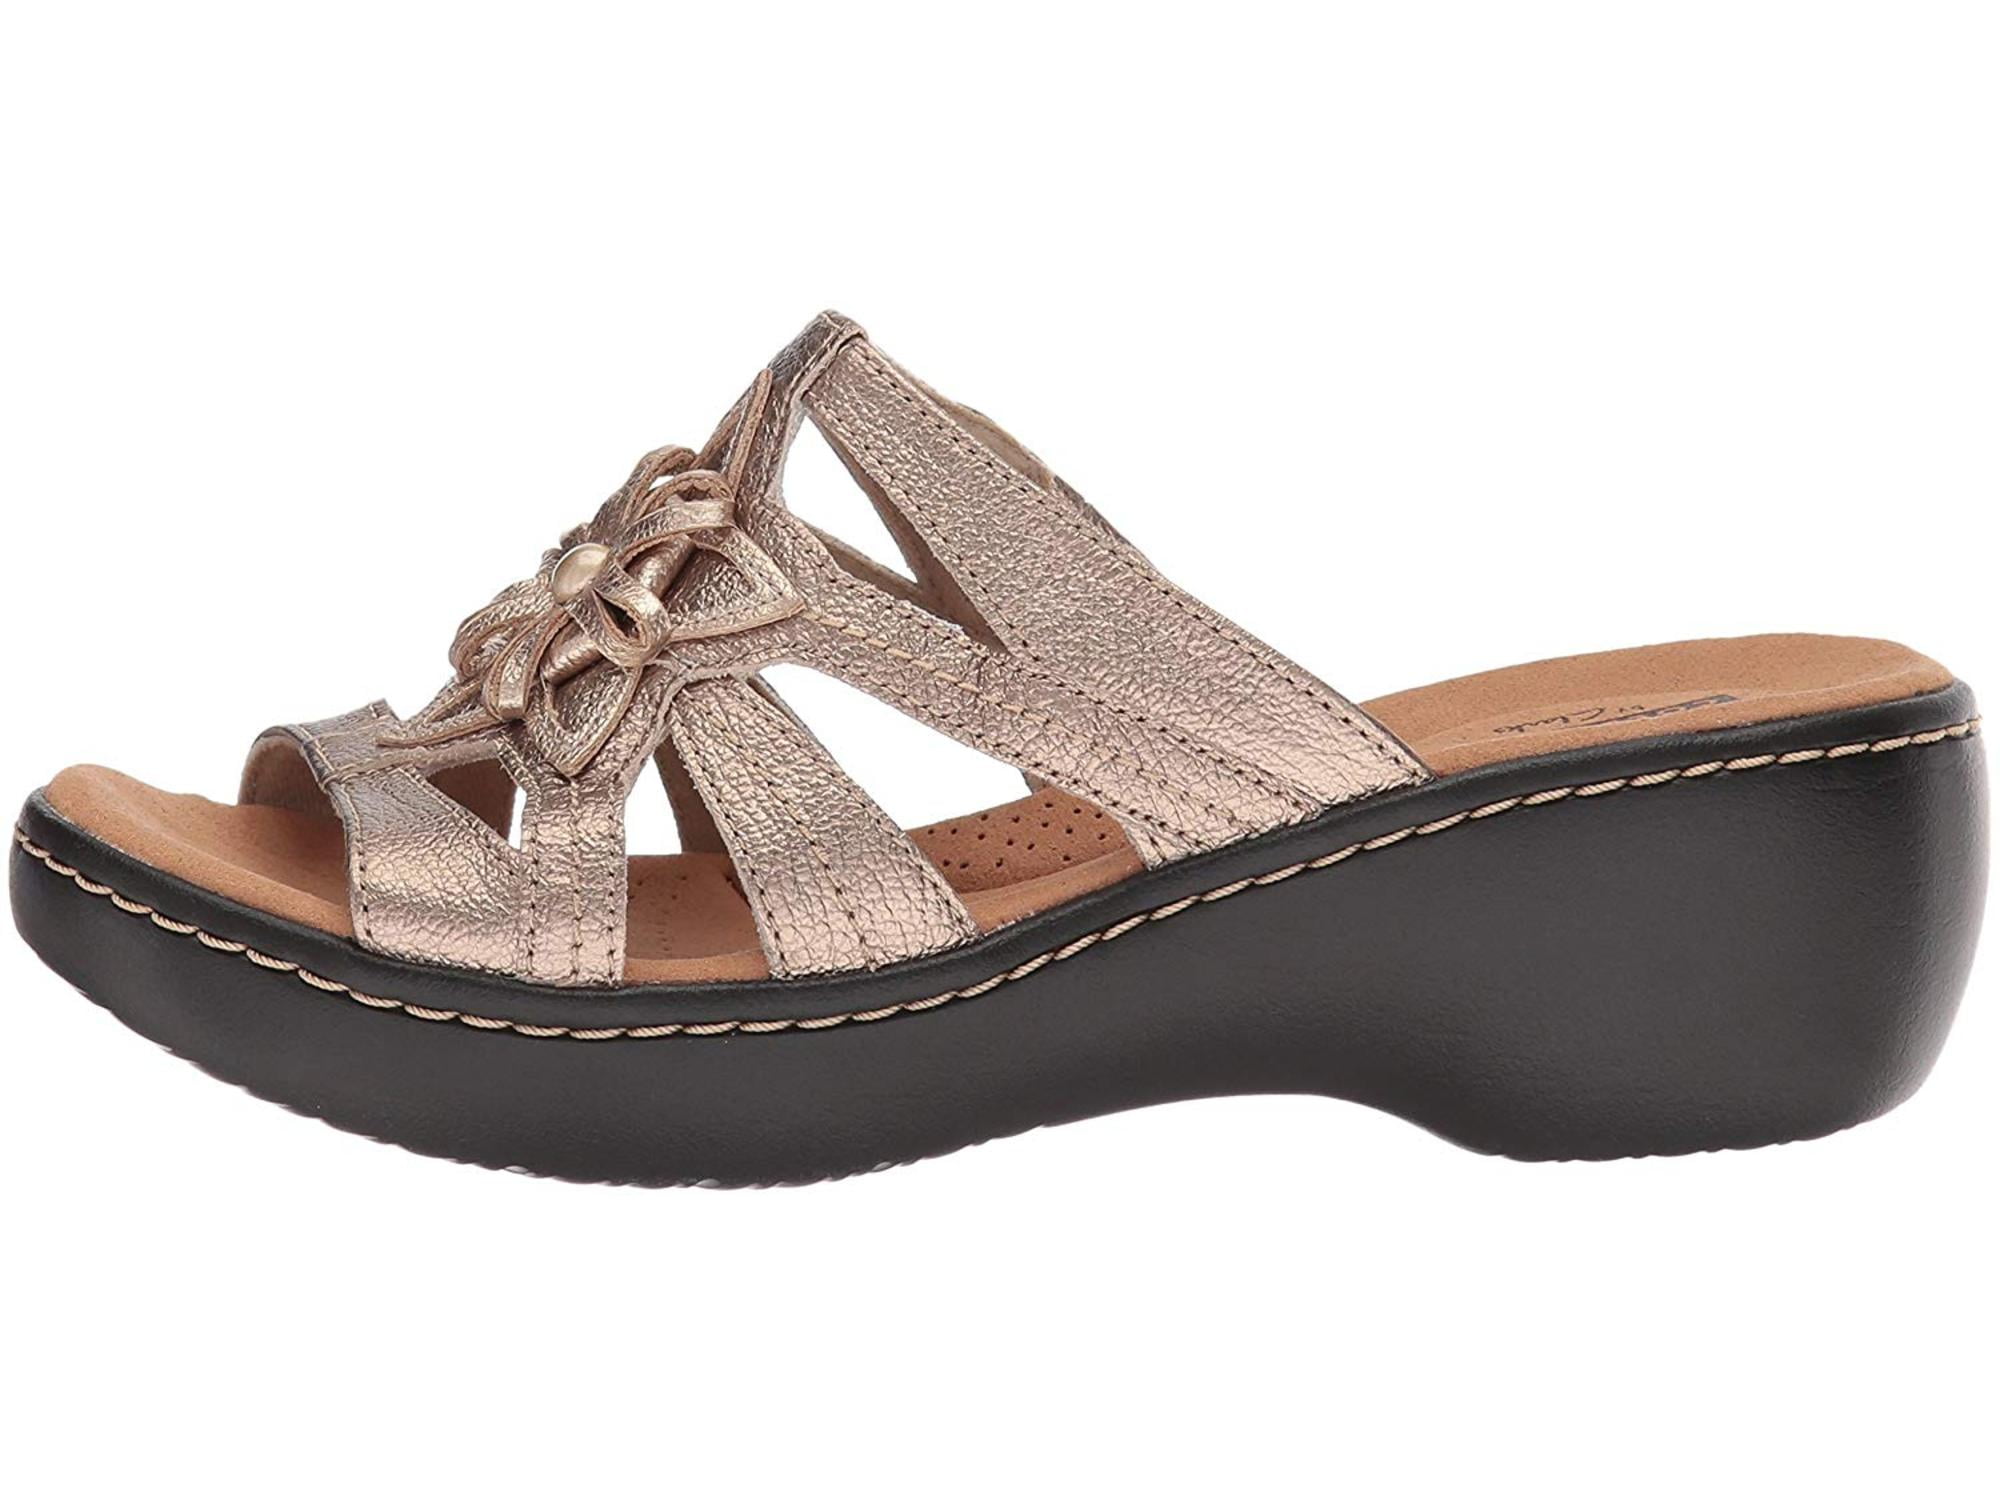 clarks women's sandals 2015